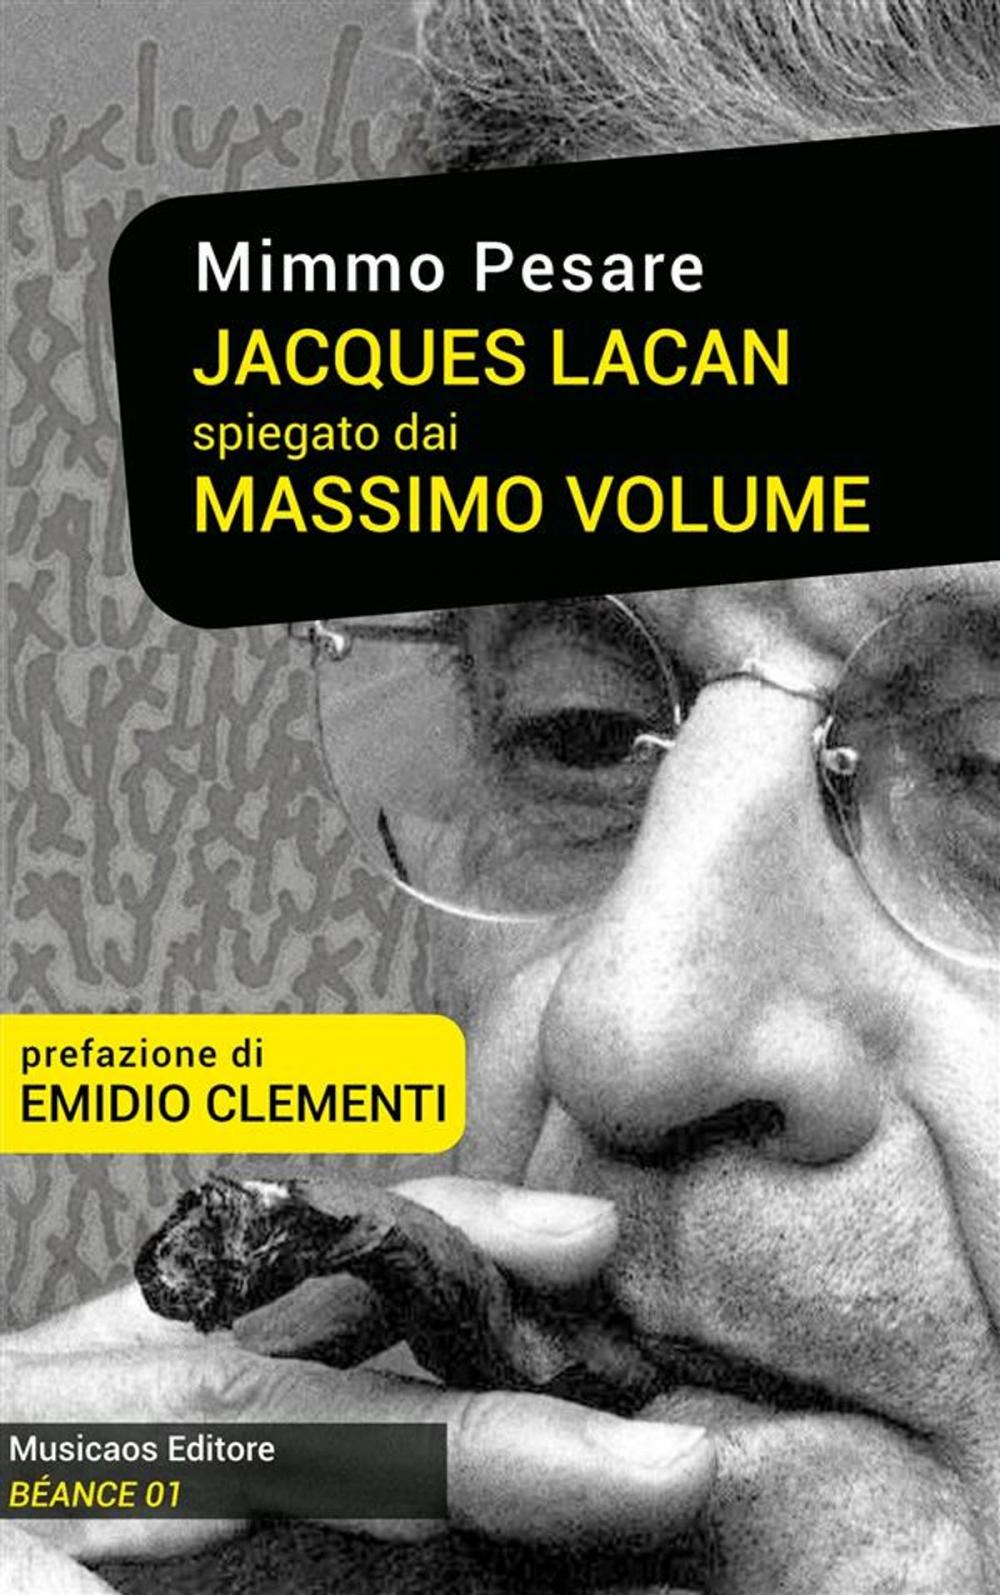 Big bigCover of Jacques Lacan spiegato dai Massimo Volume